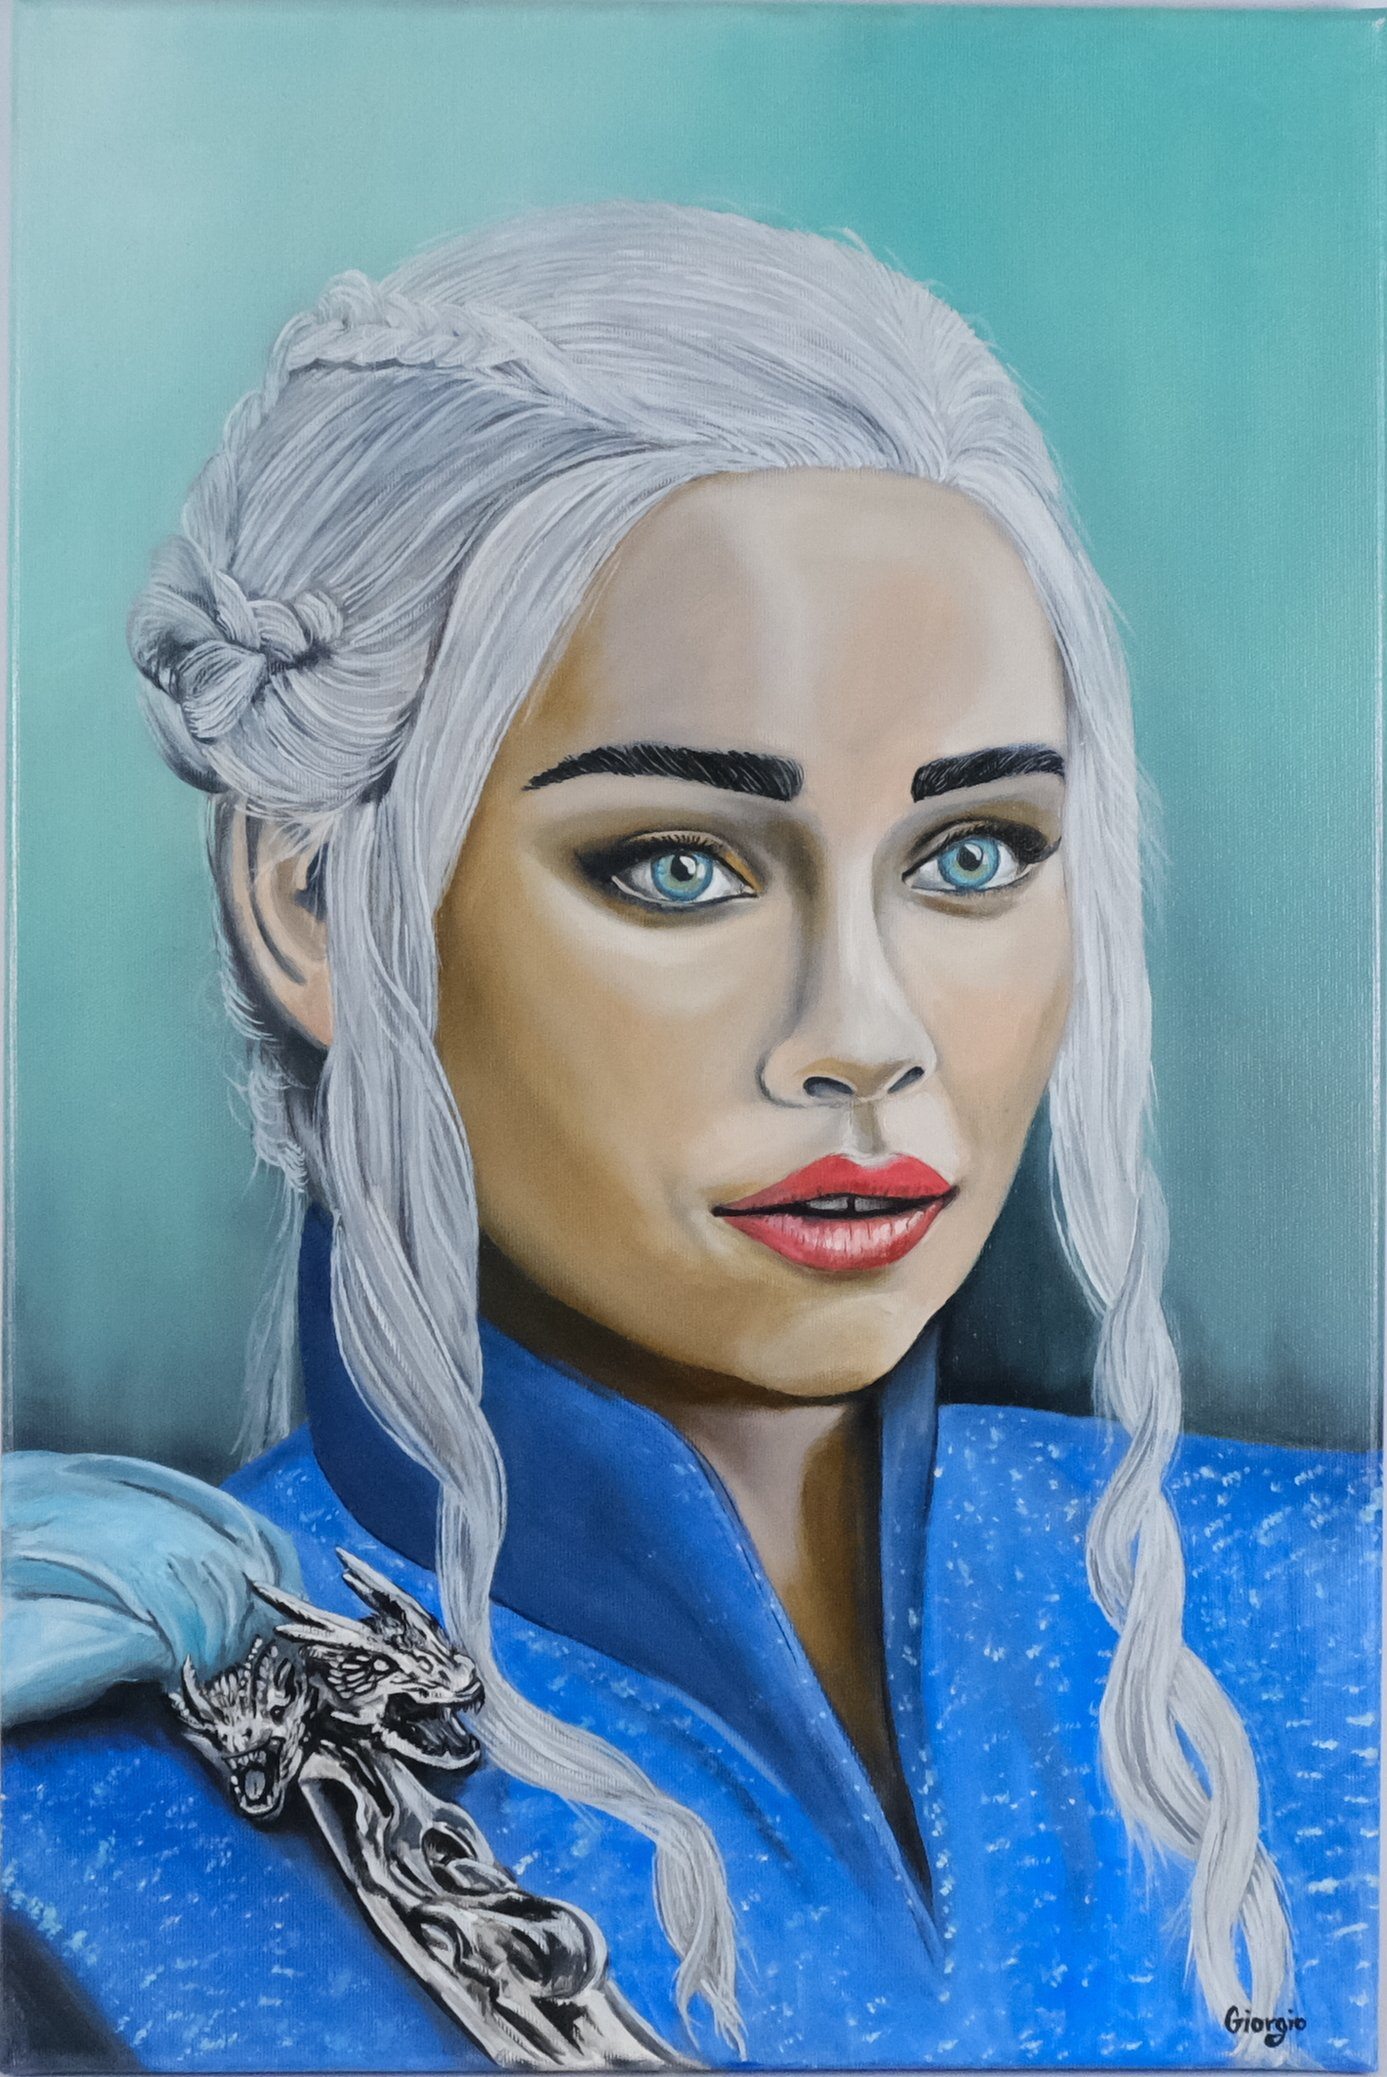 Giorgio - Královna draků Daenerys